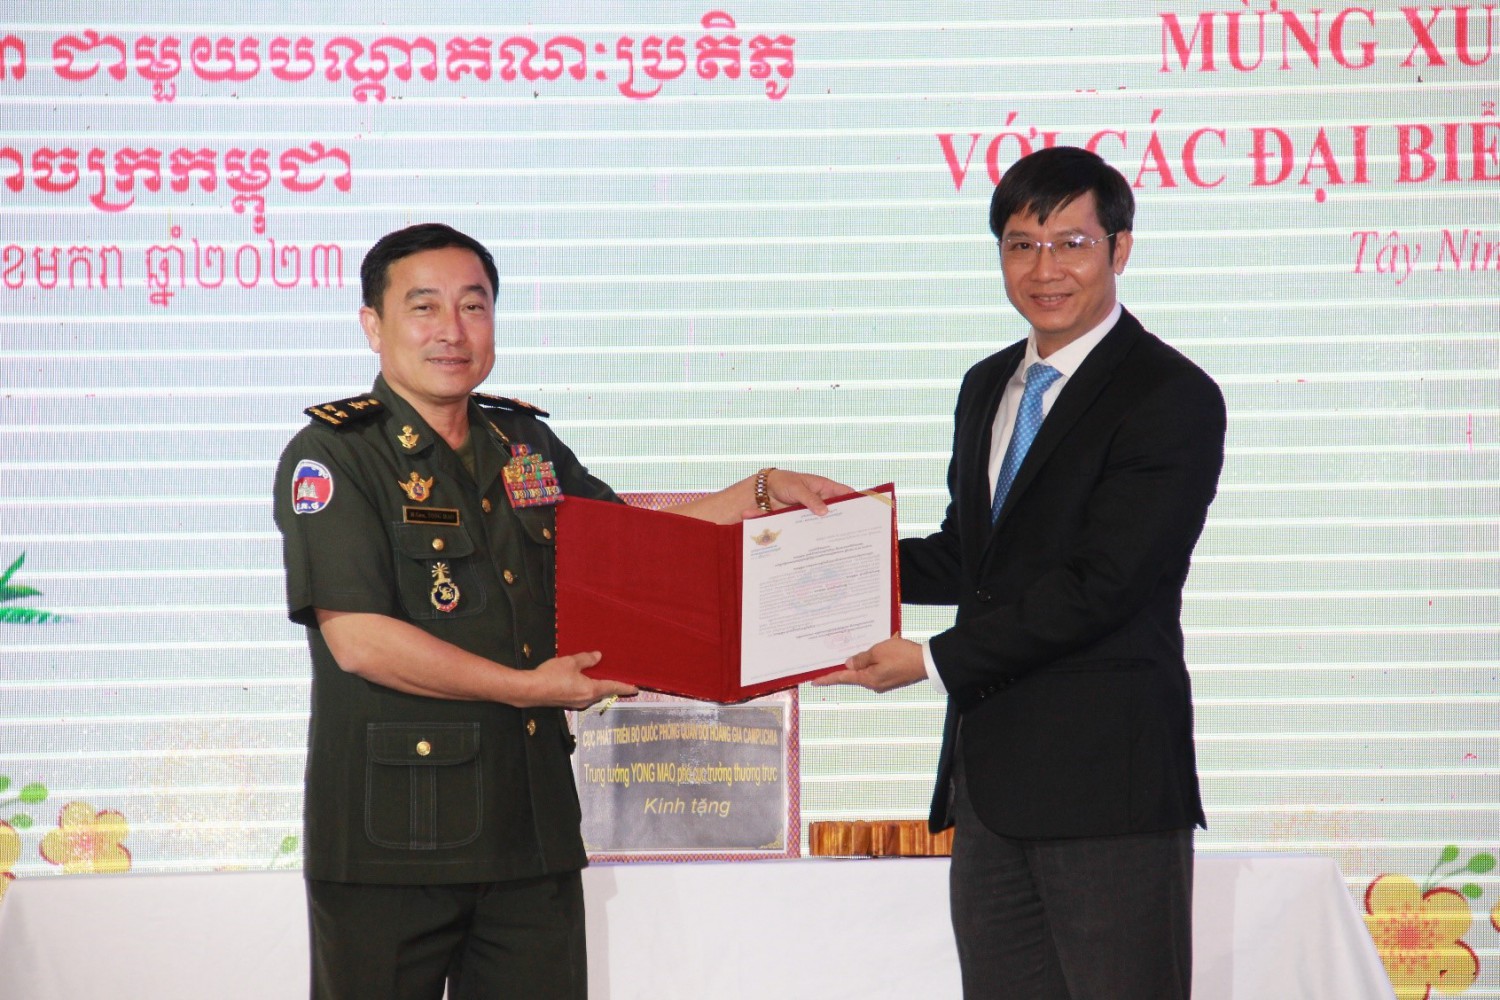 Ngài Yong Mao - Phó Cục Trưởng Thường trực Cục Phát triển - Bộ Quốc phòng Campuchia trao thư chúc mừng năm mới cho đồng chí Nguyễn Thành Tâm - Bí thư Tỉnh ủy